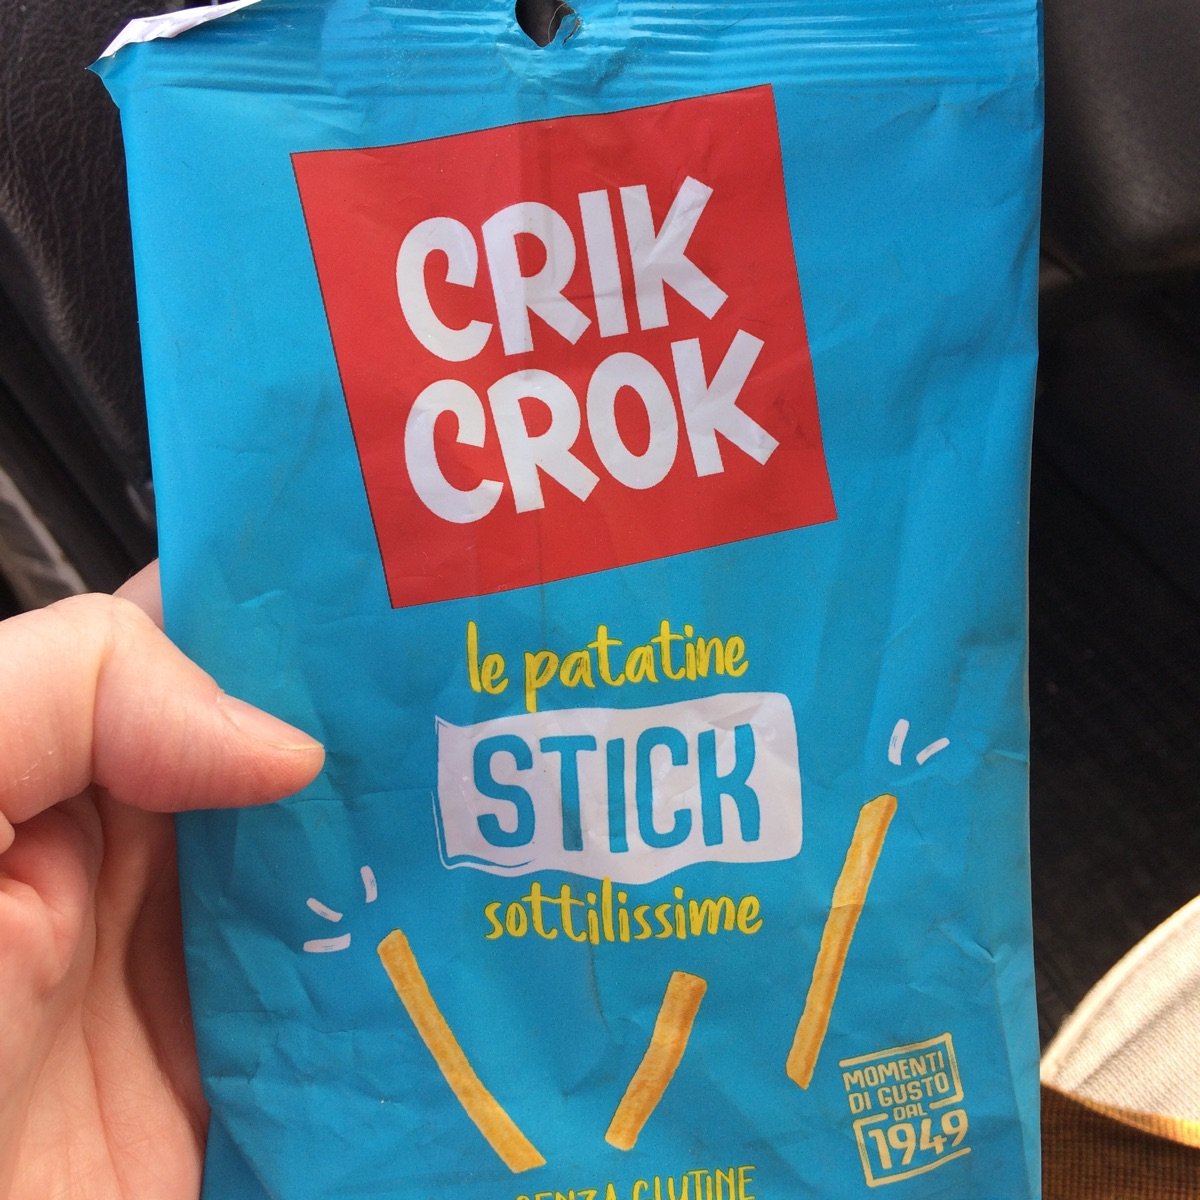 Crik crok Stick Reviews | abillion